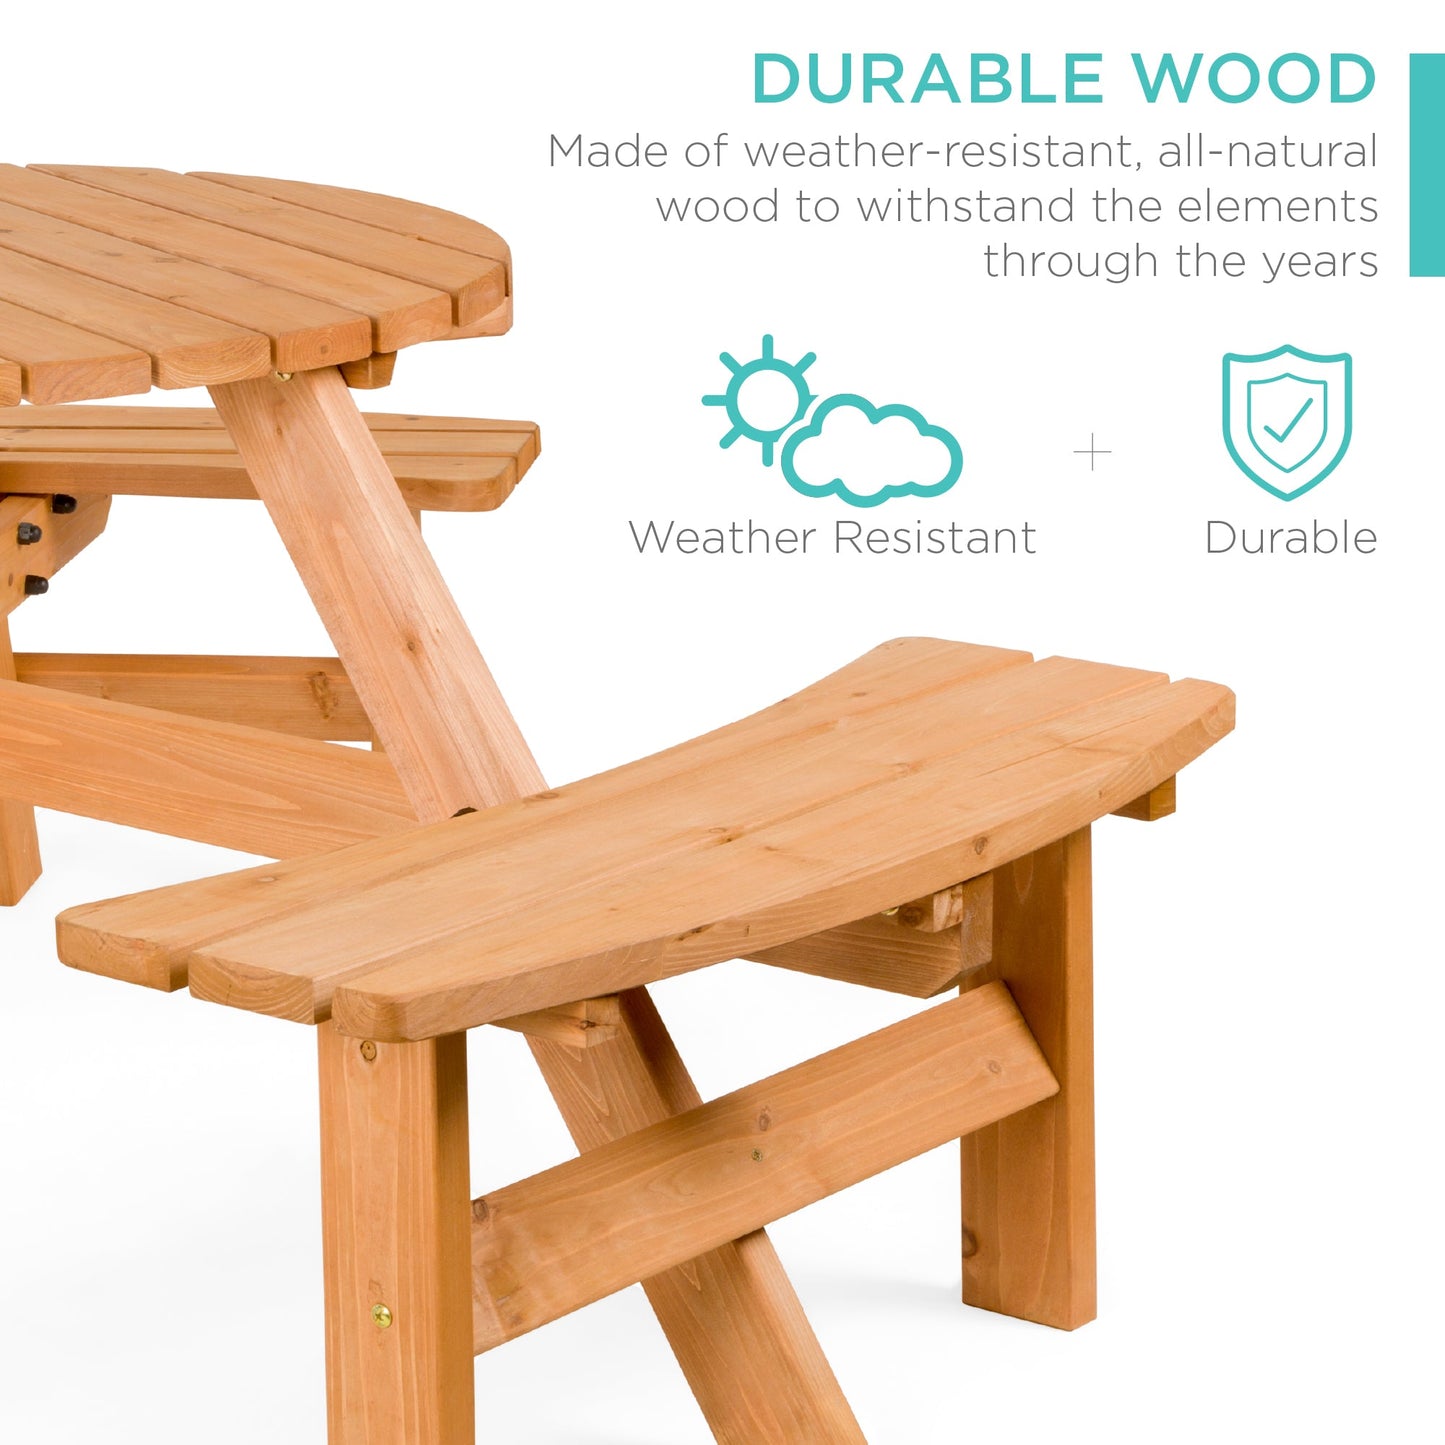 6-Person Circular Wooden Picnic Table w/ Umbrella Hole, 3 Benches